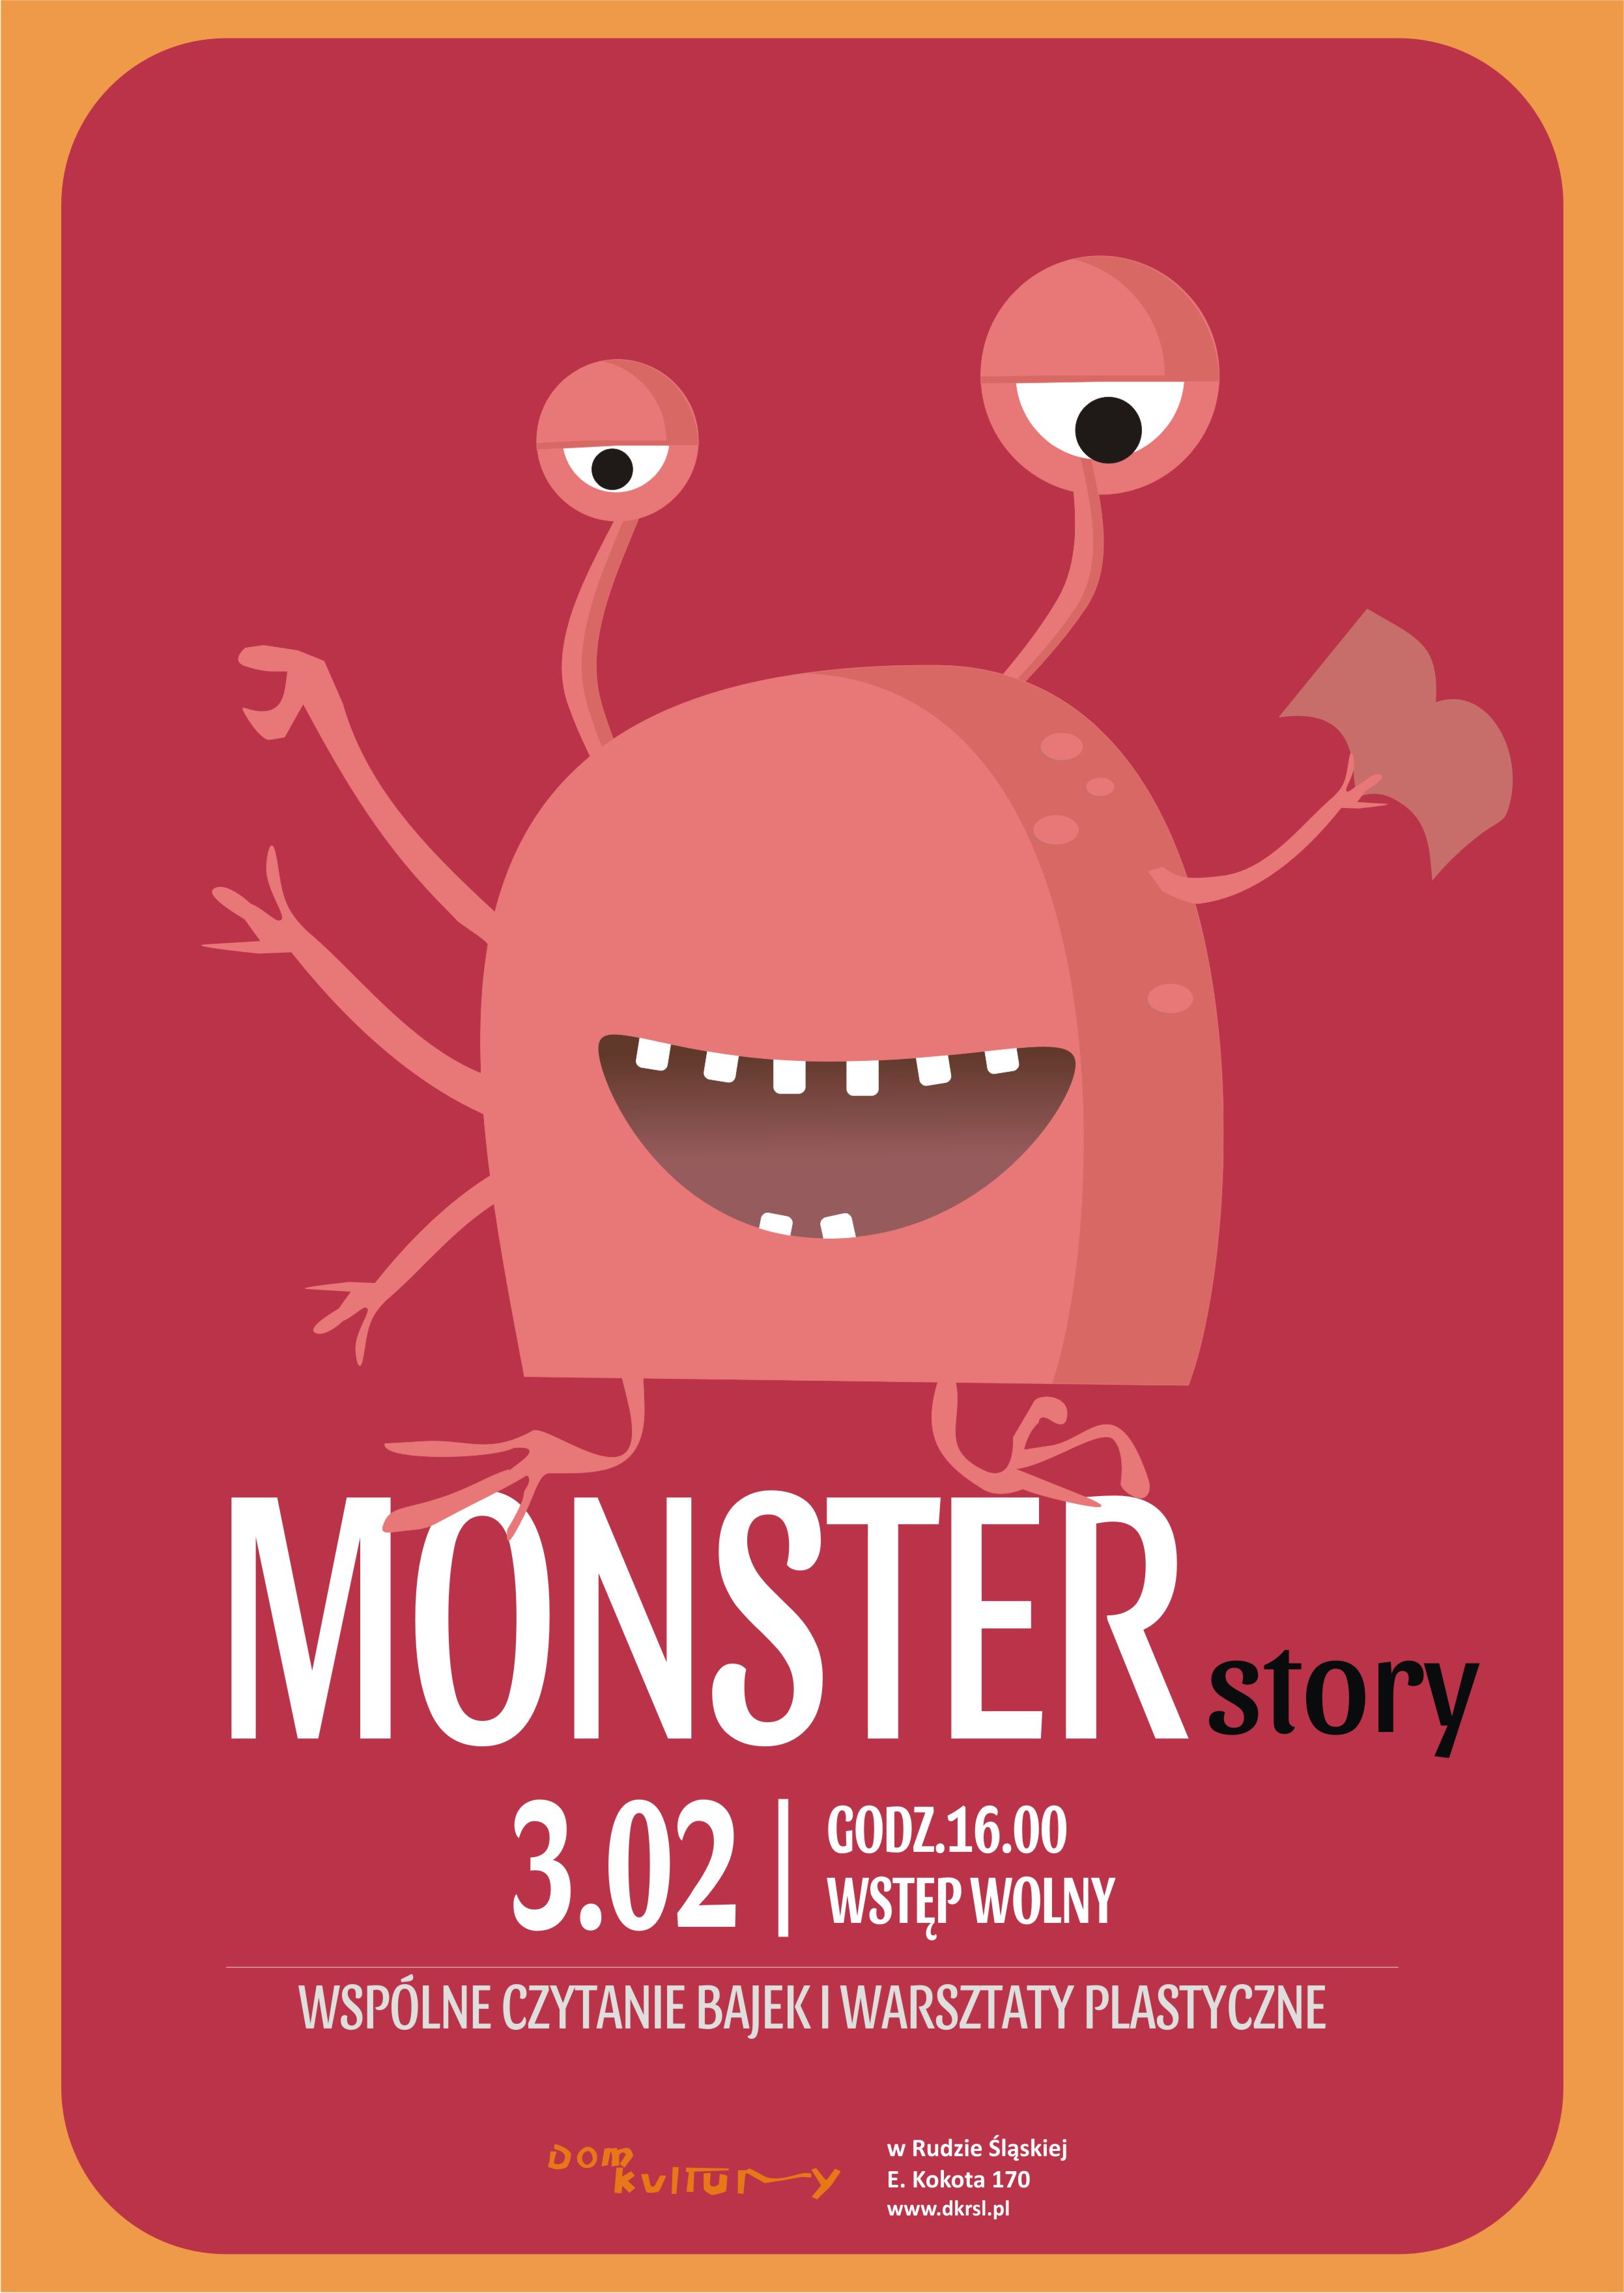 Monster story